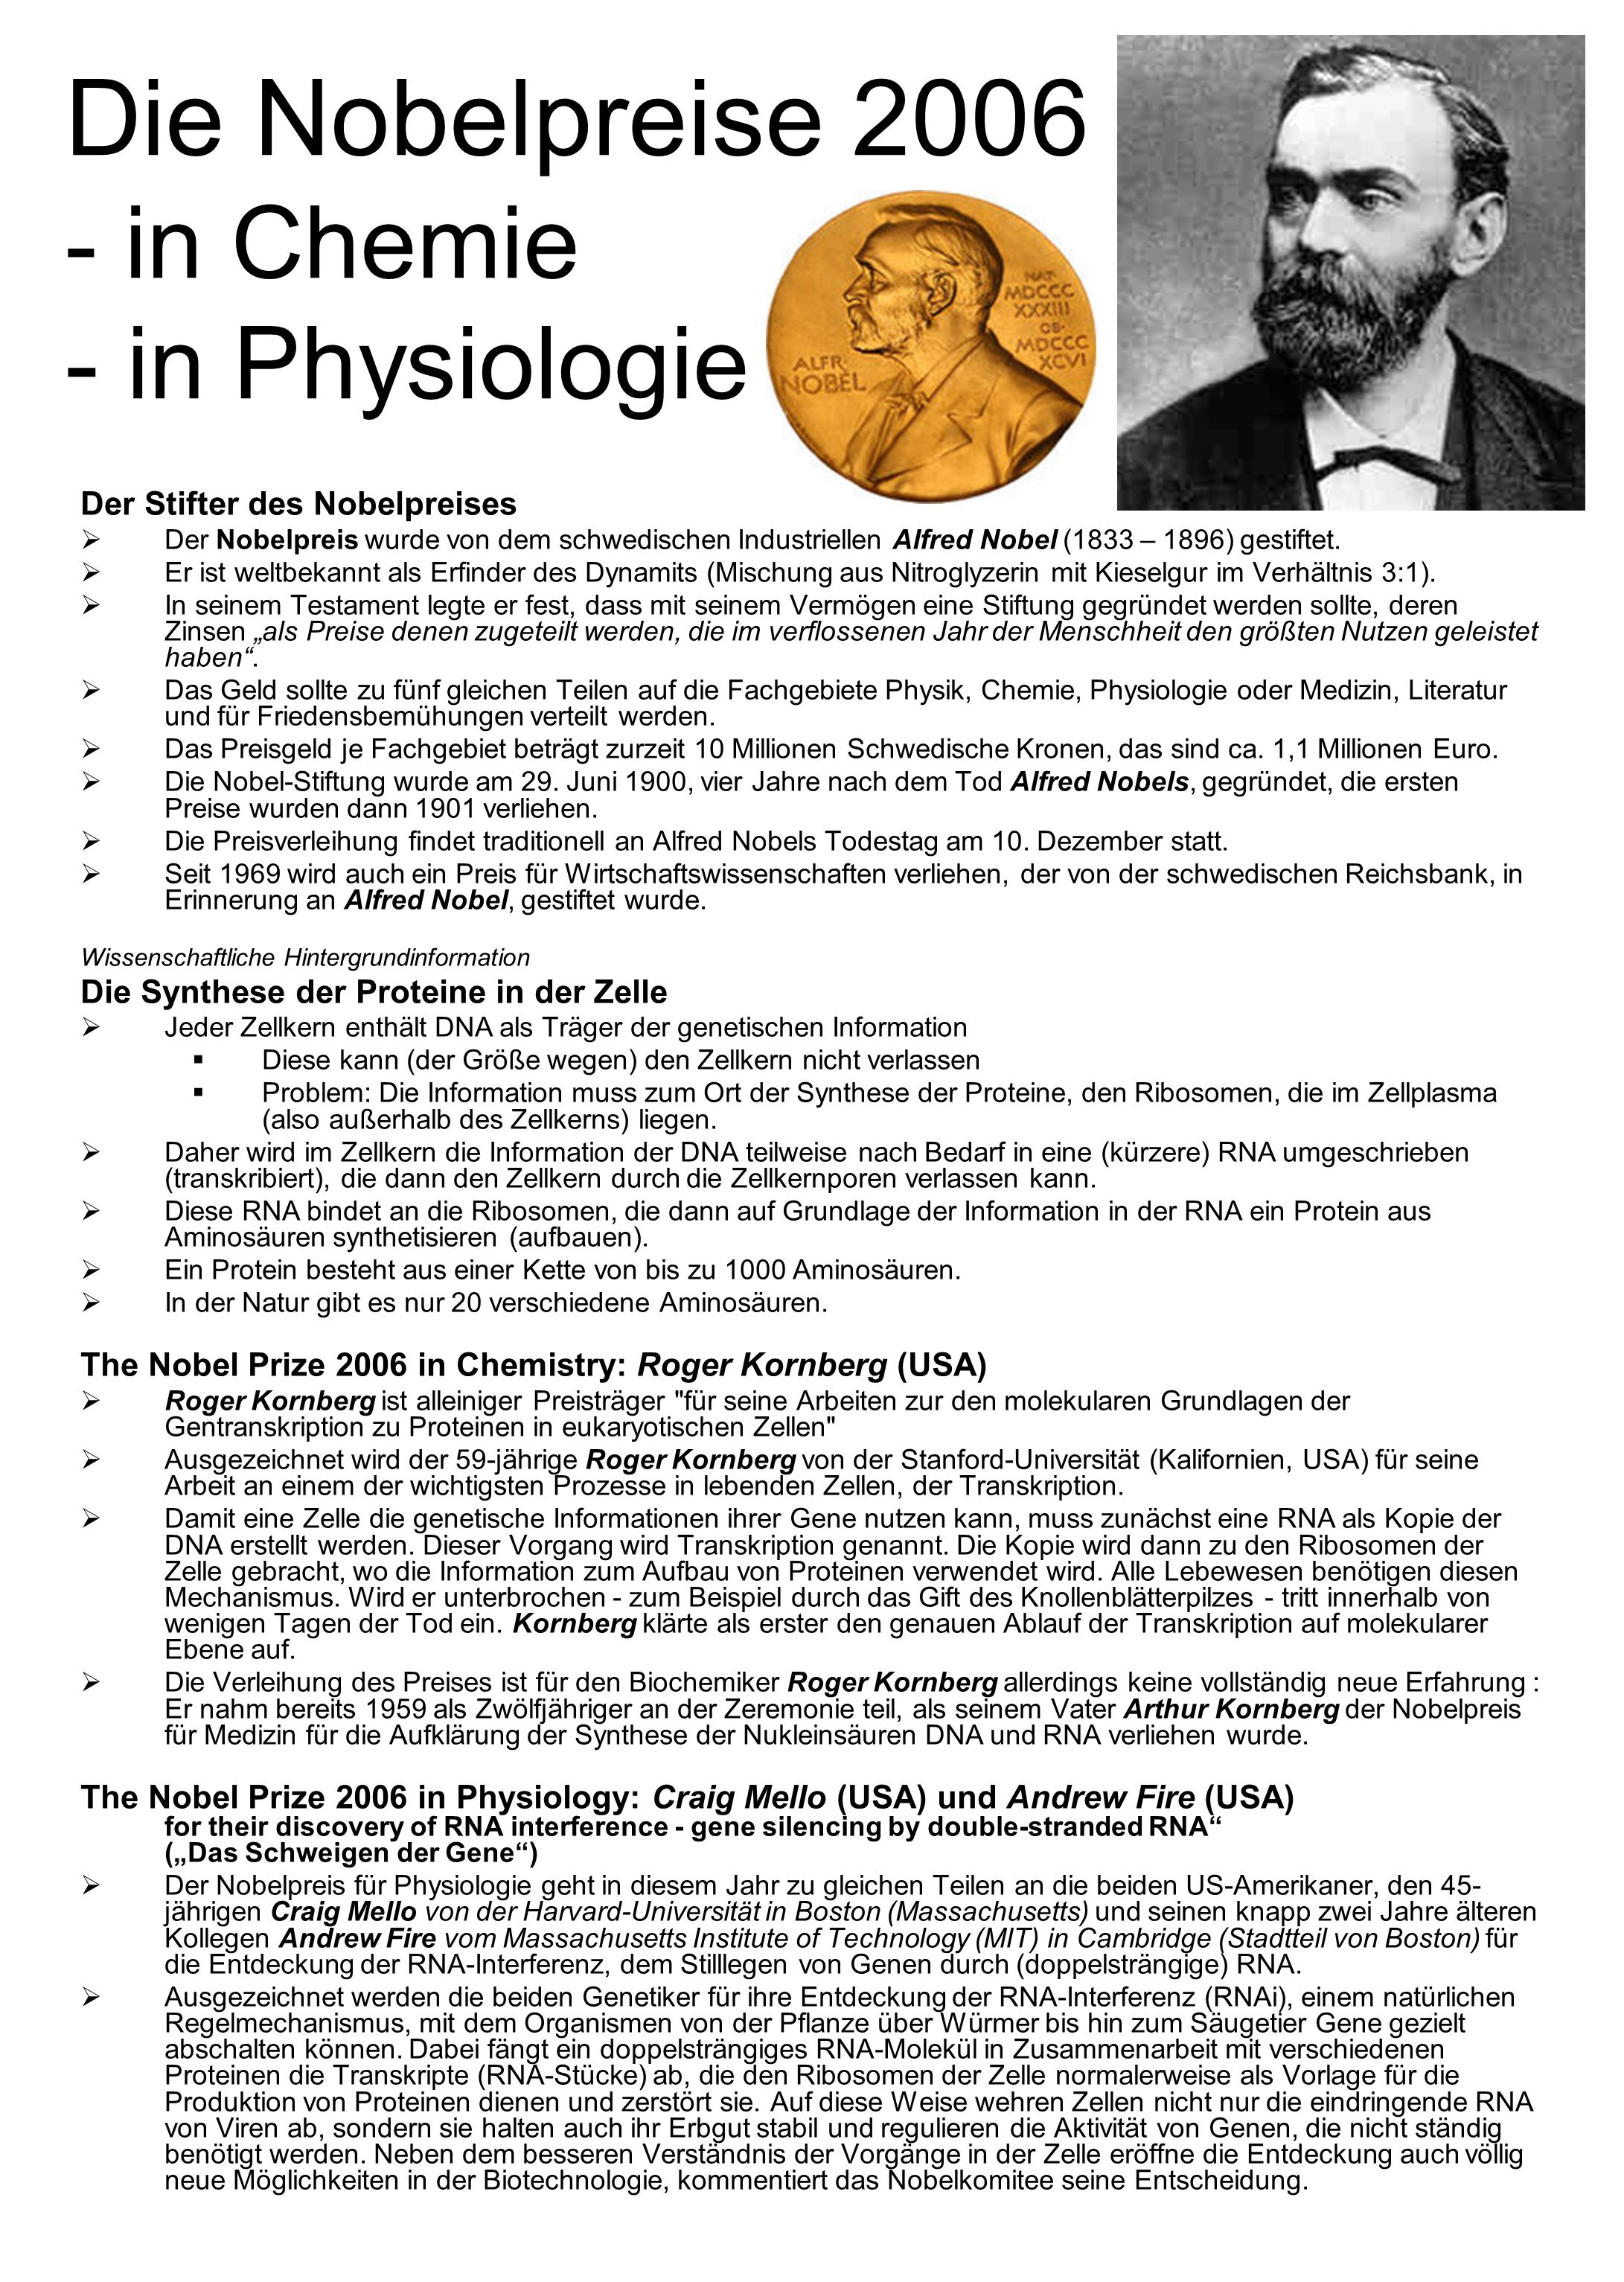 Die Nobelpreise in Chemie - in Physiologie